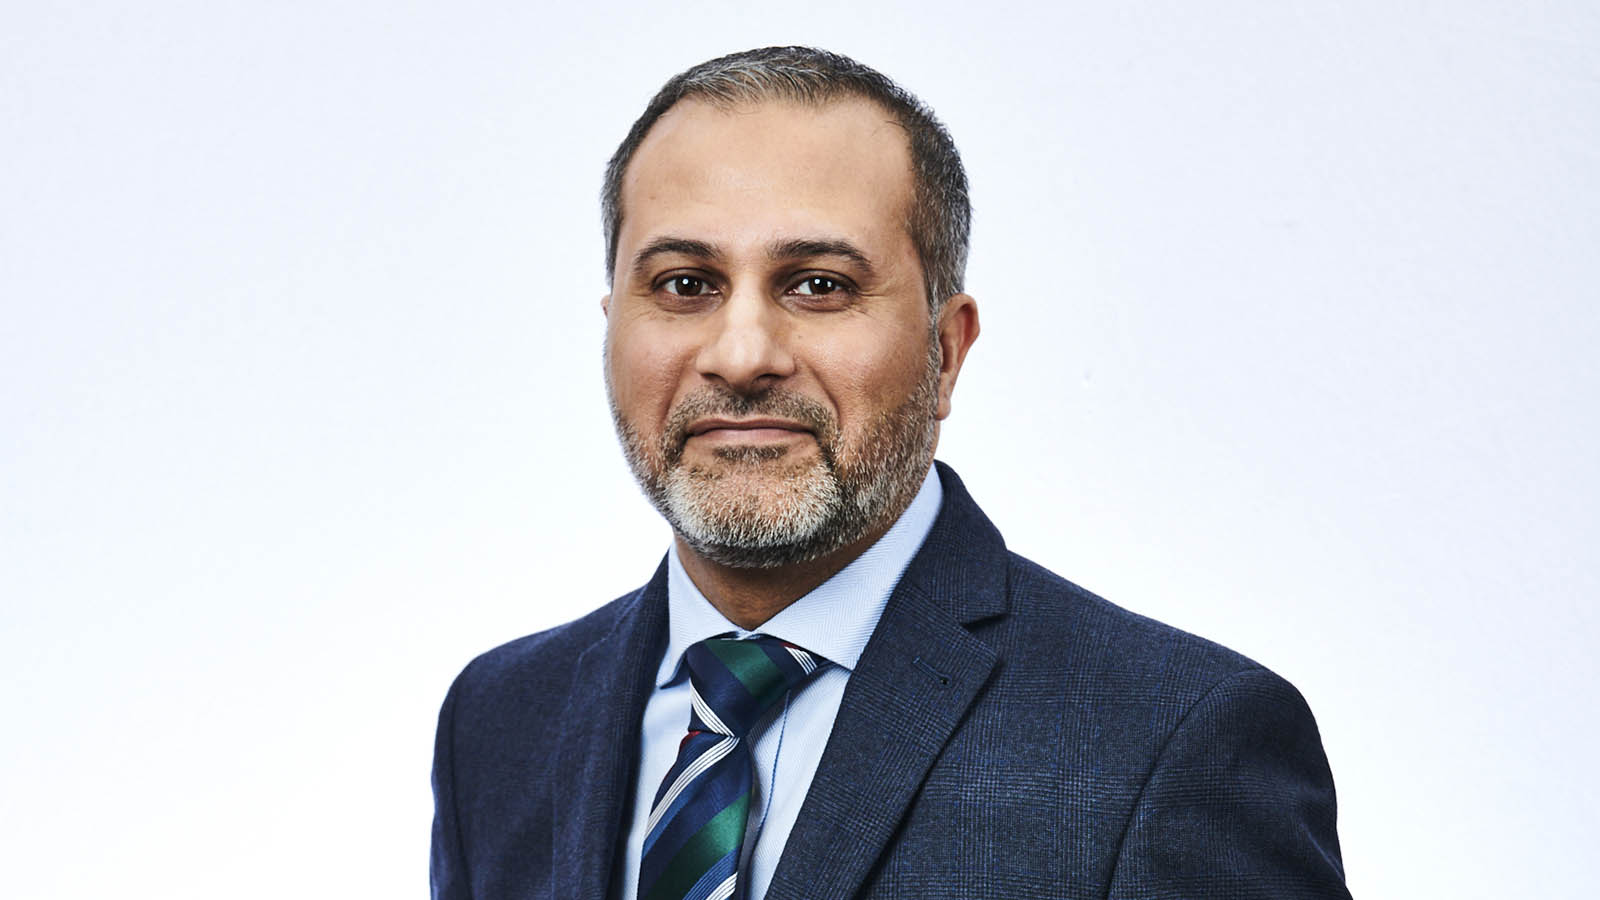 Abdul Ali, executive director of SevenHomes